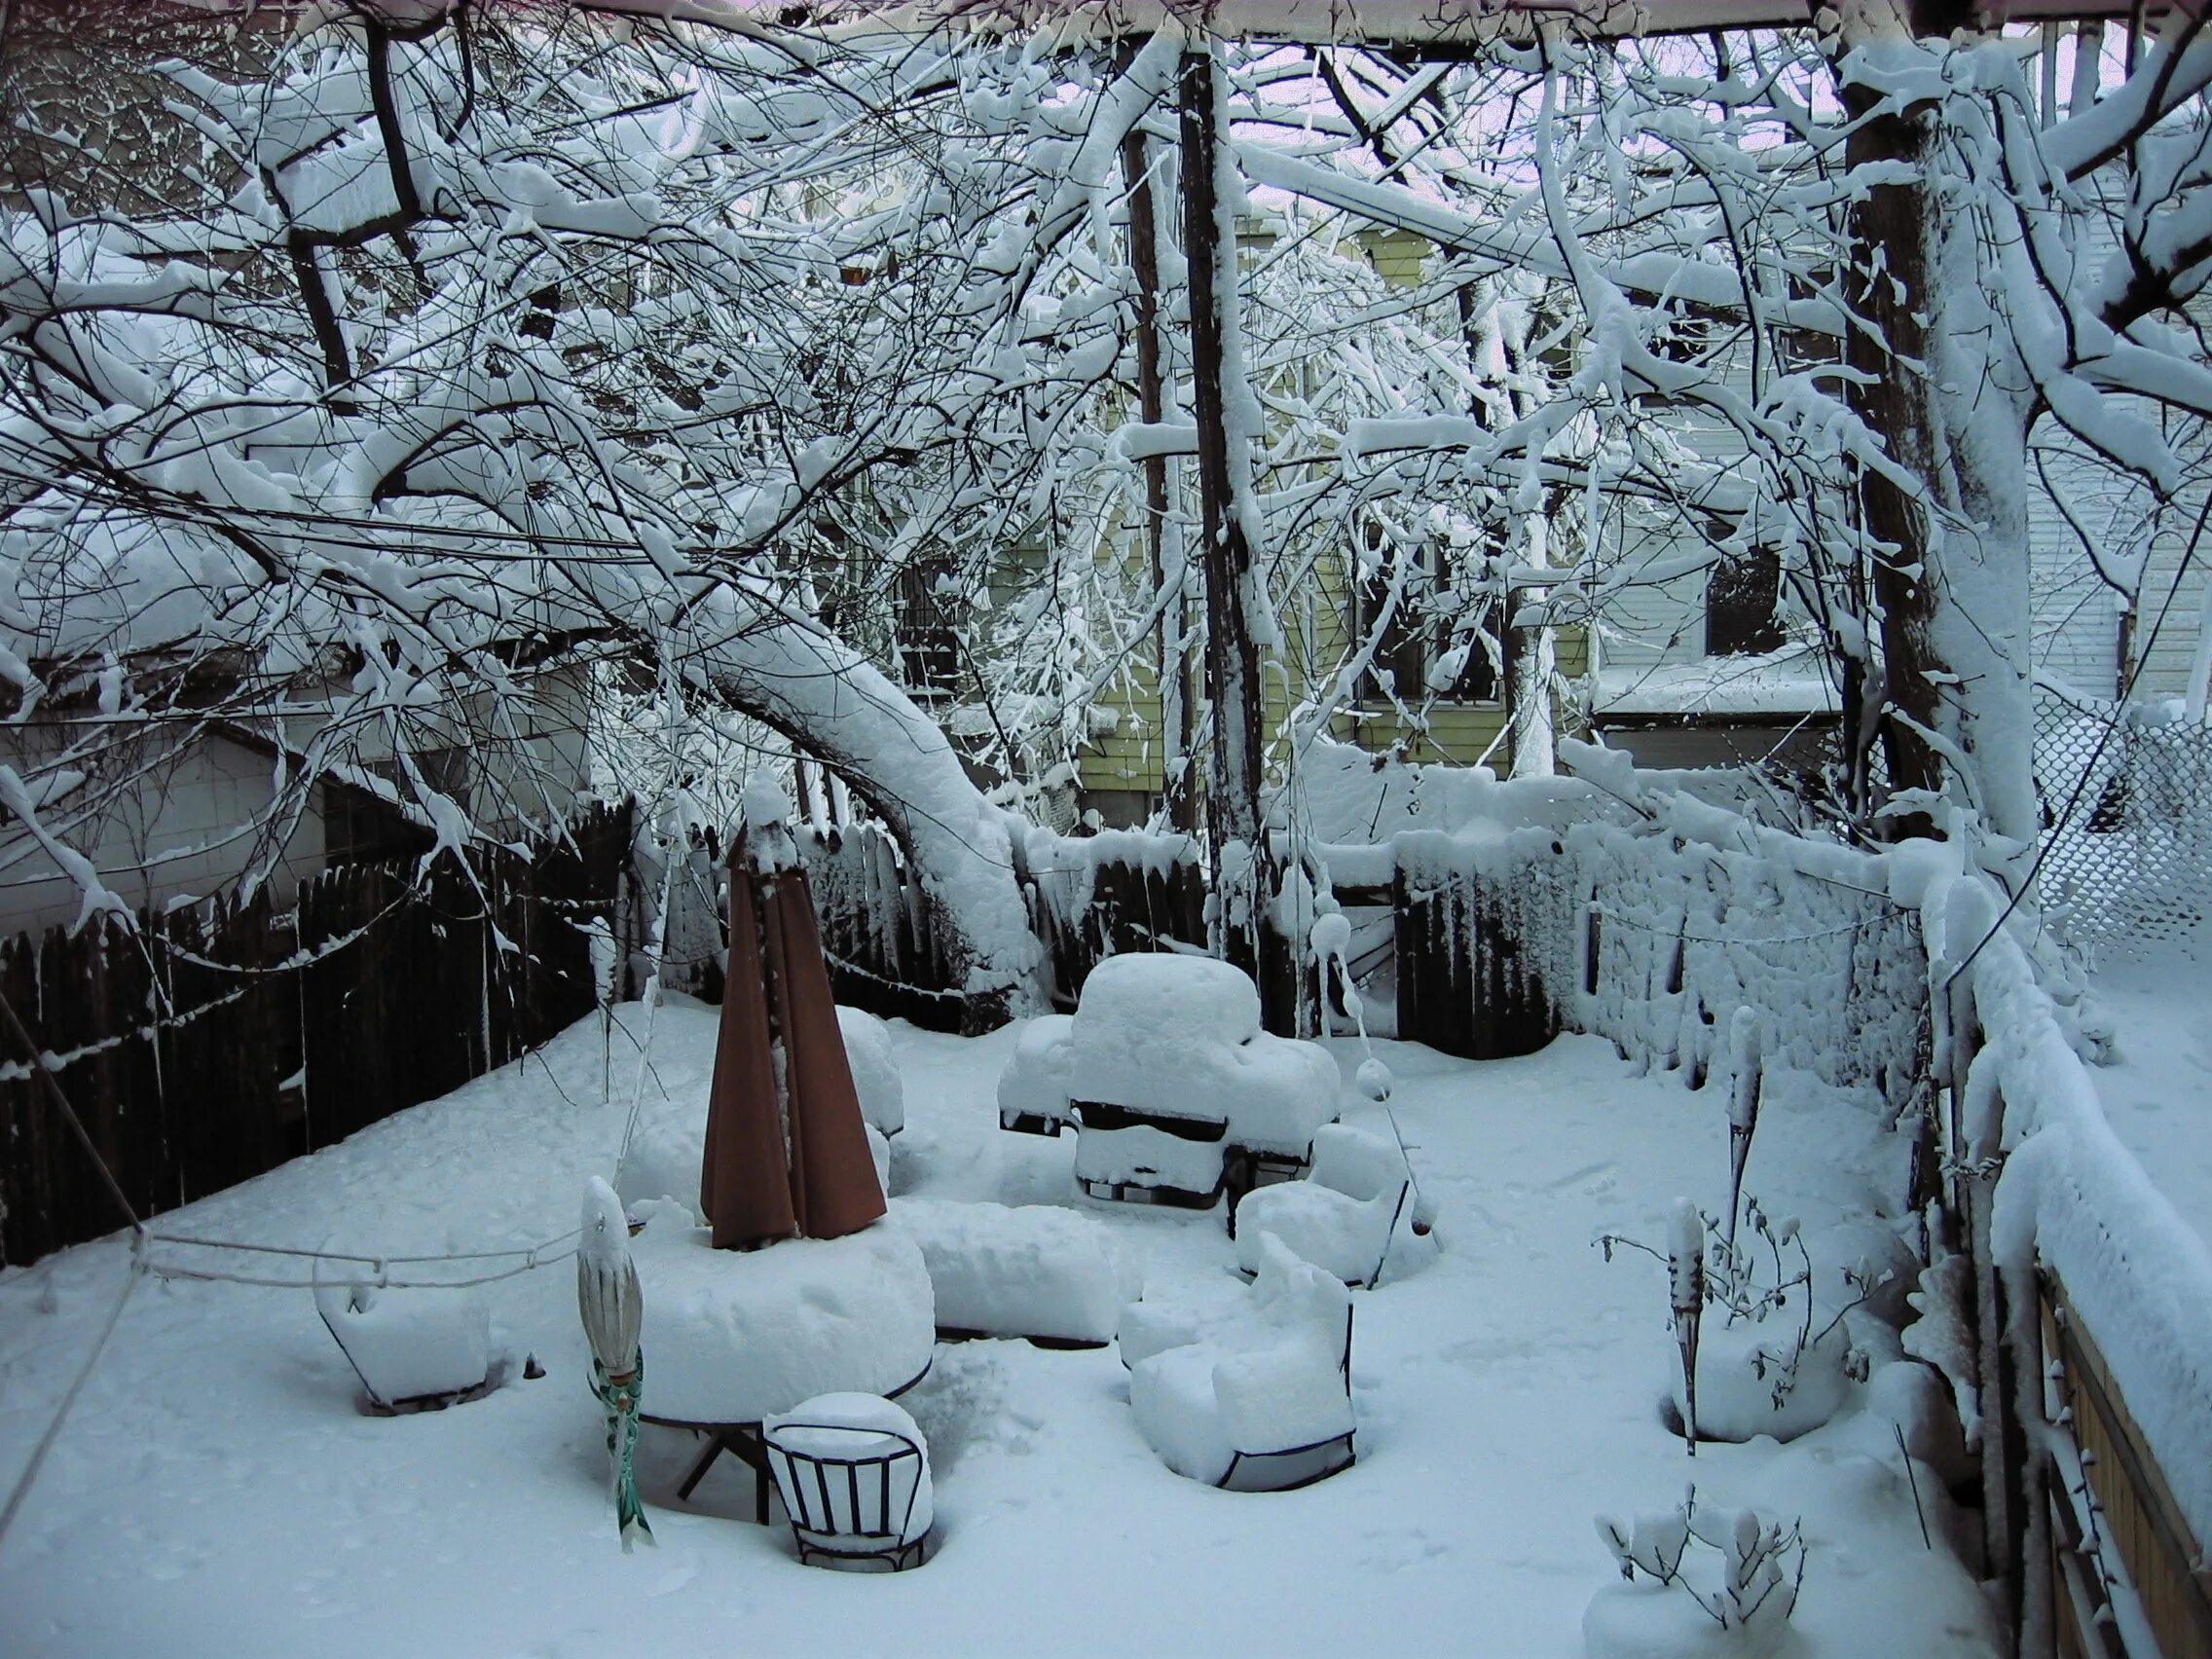 Сад зимой. Зима в саду. Укрытый сад зимой. Зимний сад зимой. Снегом укрыты дома